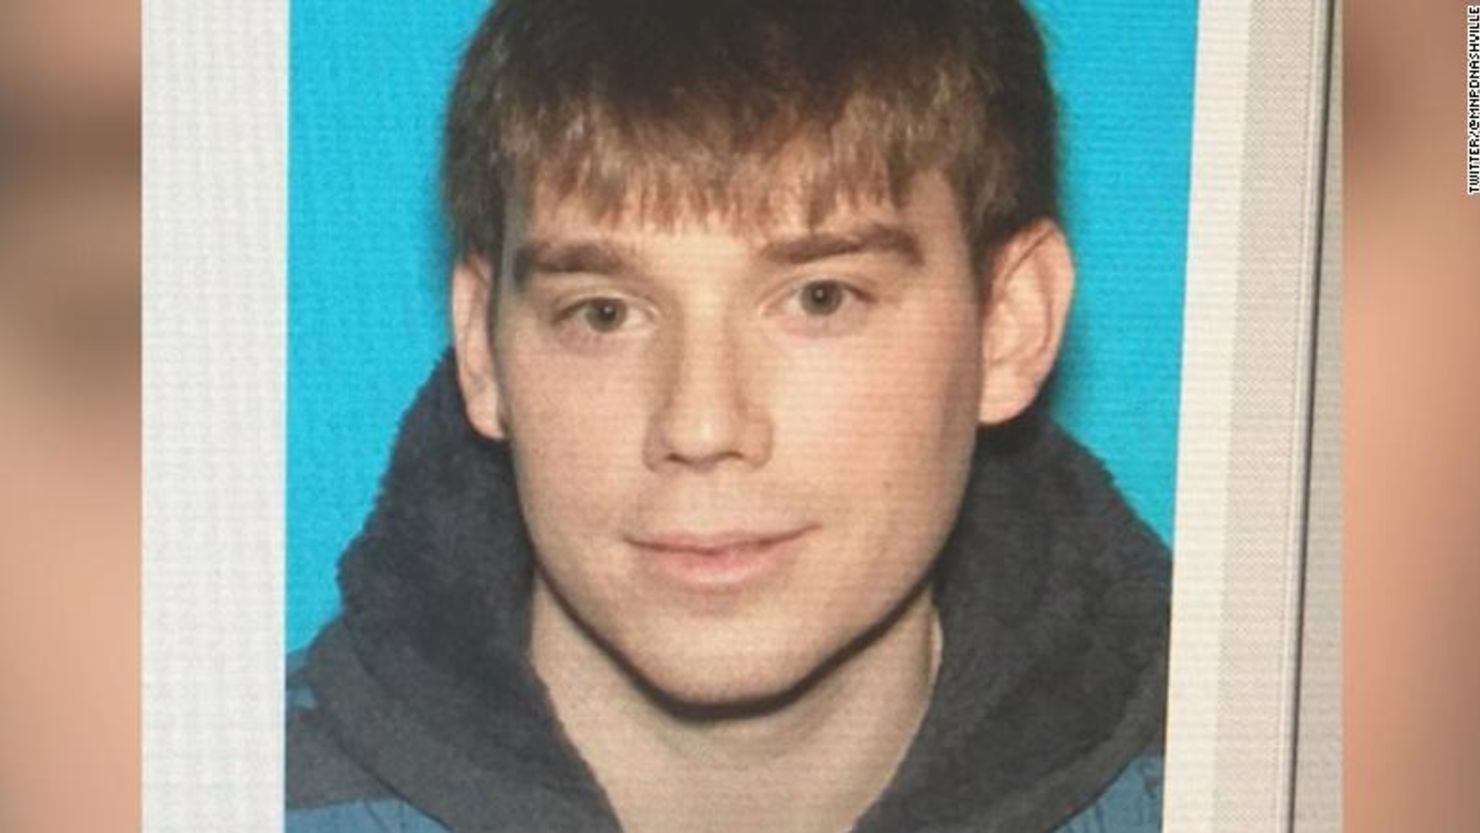 El sospechoso fue identificado como Travis Reinking.